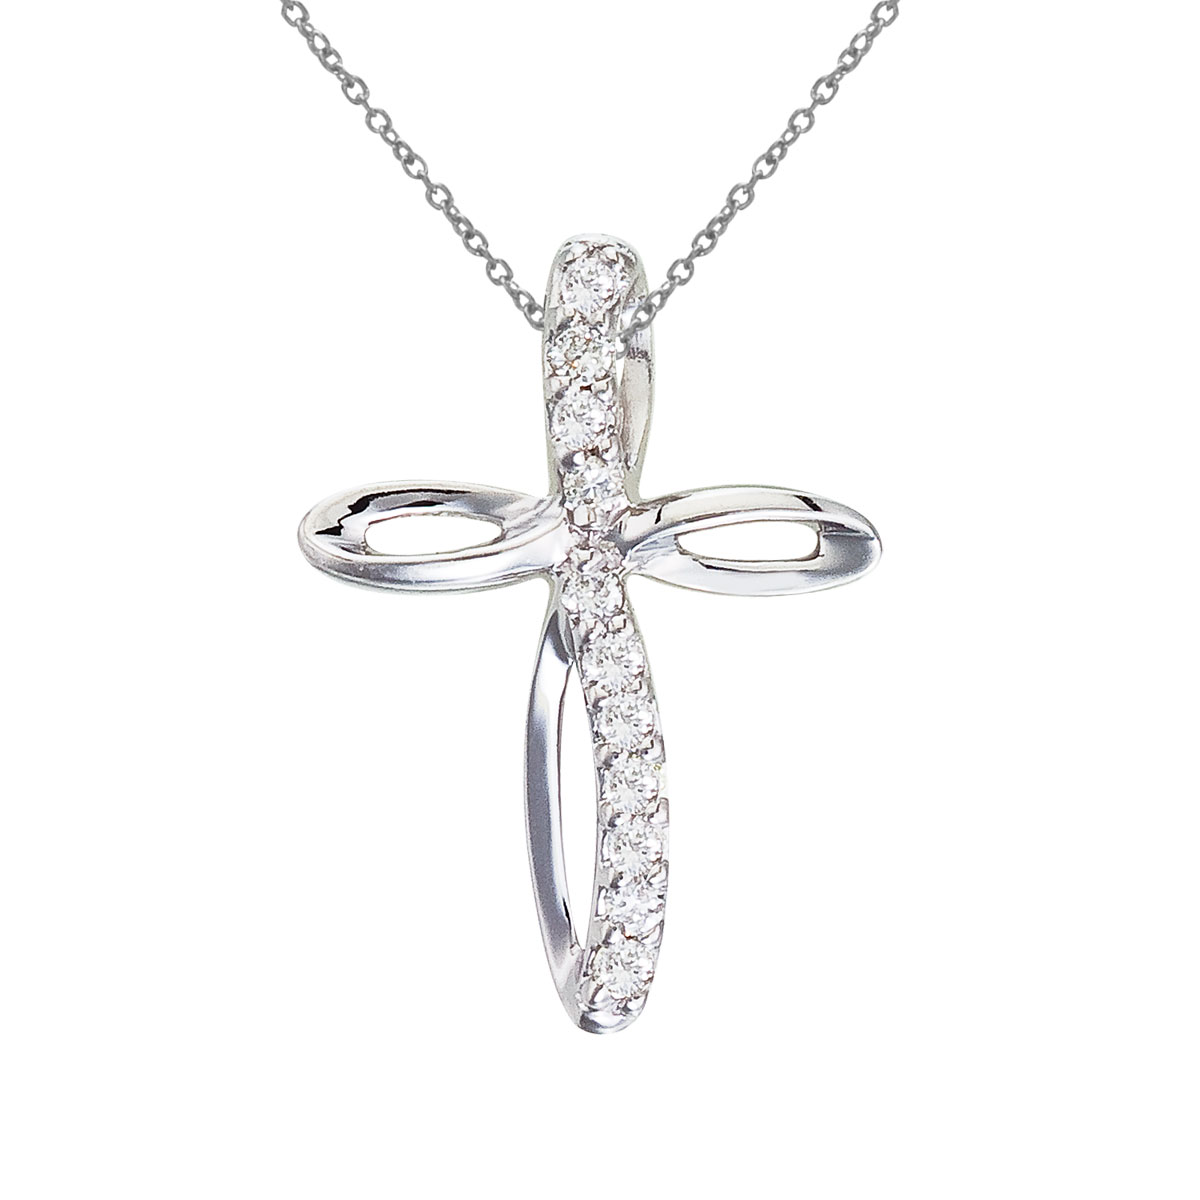 JCX2997: 14k white gold cross pendant with shimmering diamonds.